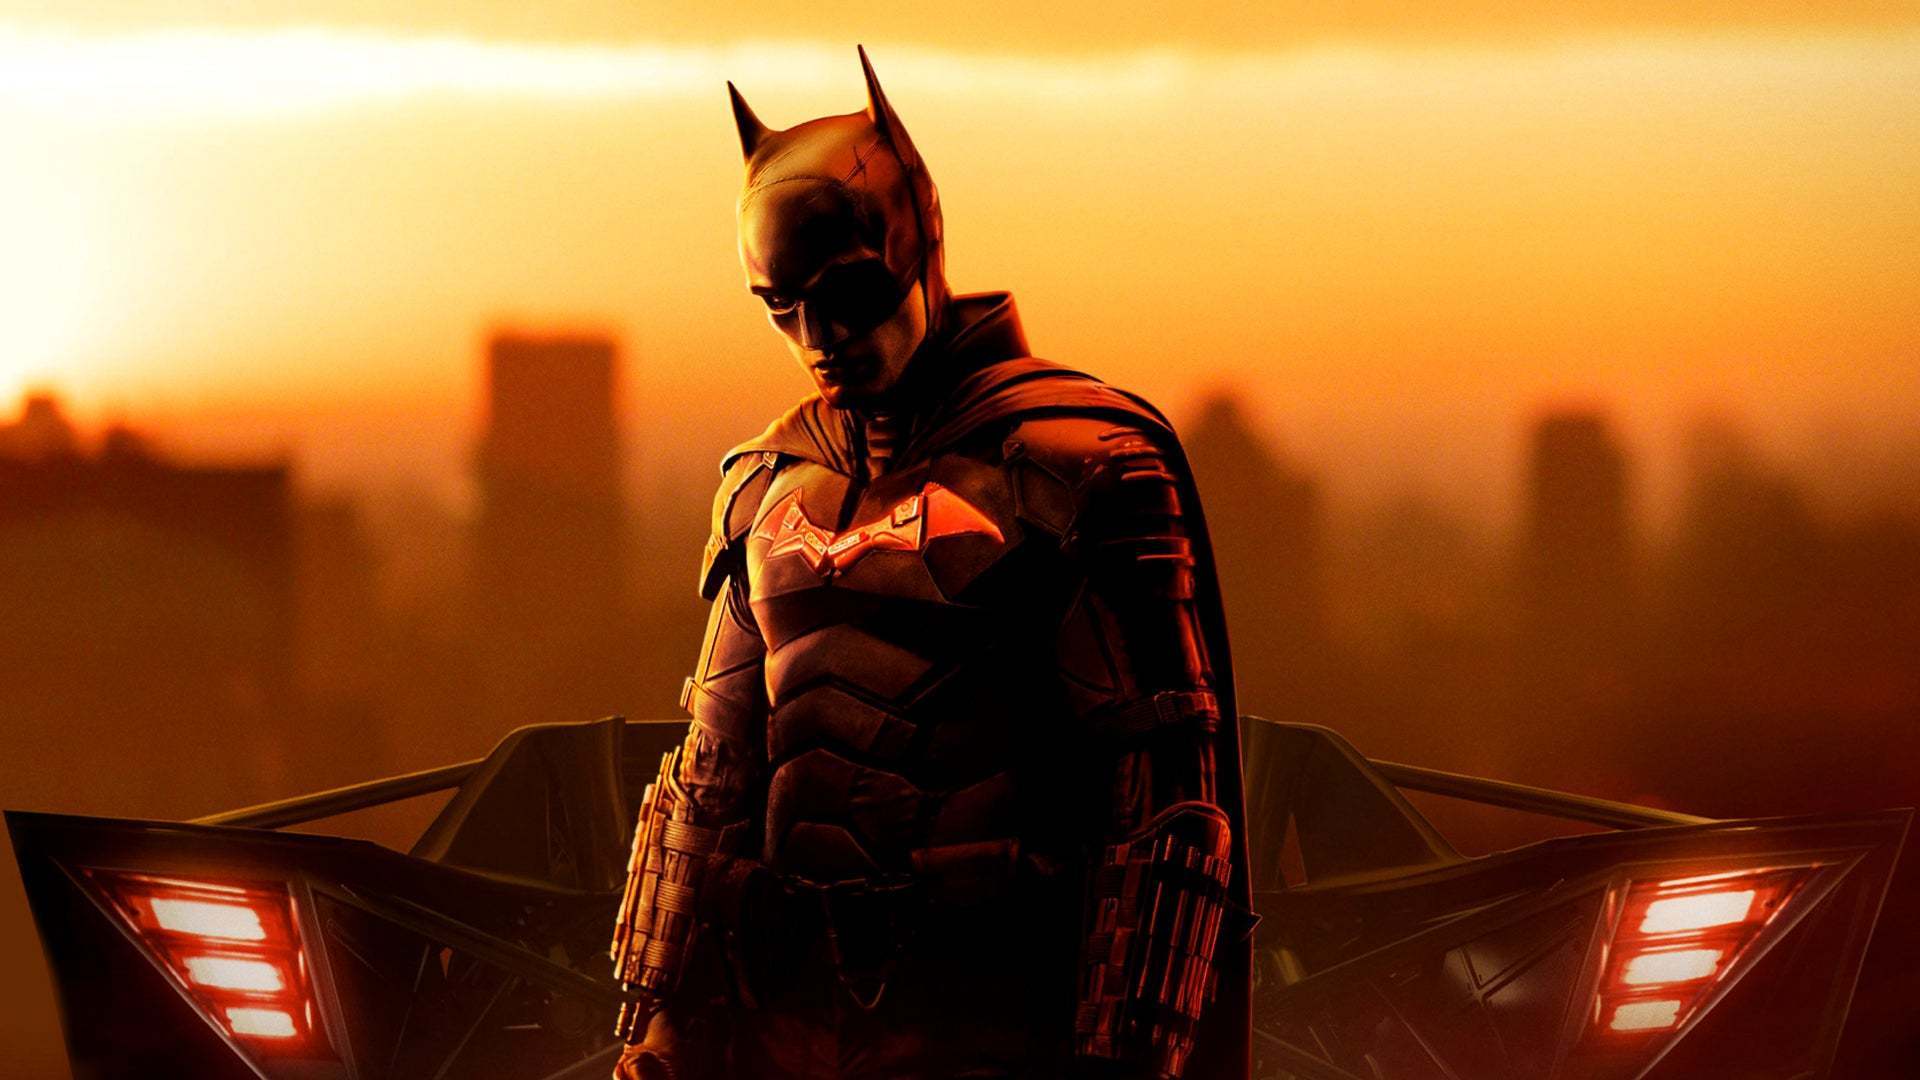 《新蝙蝠俠》電影將是三部曲 續集定檔2025年10月